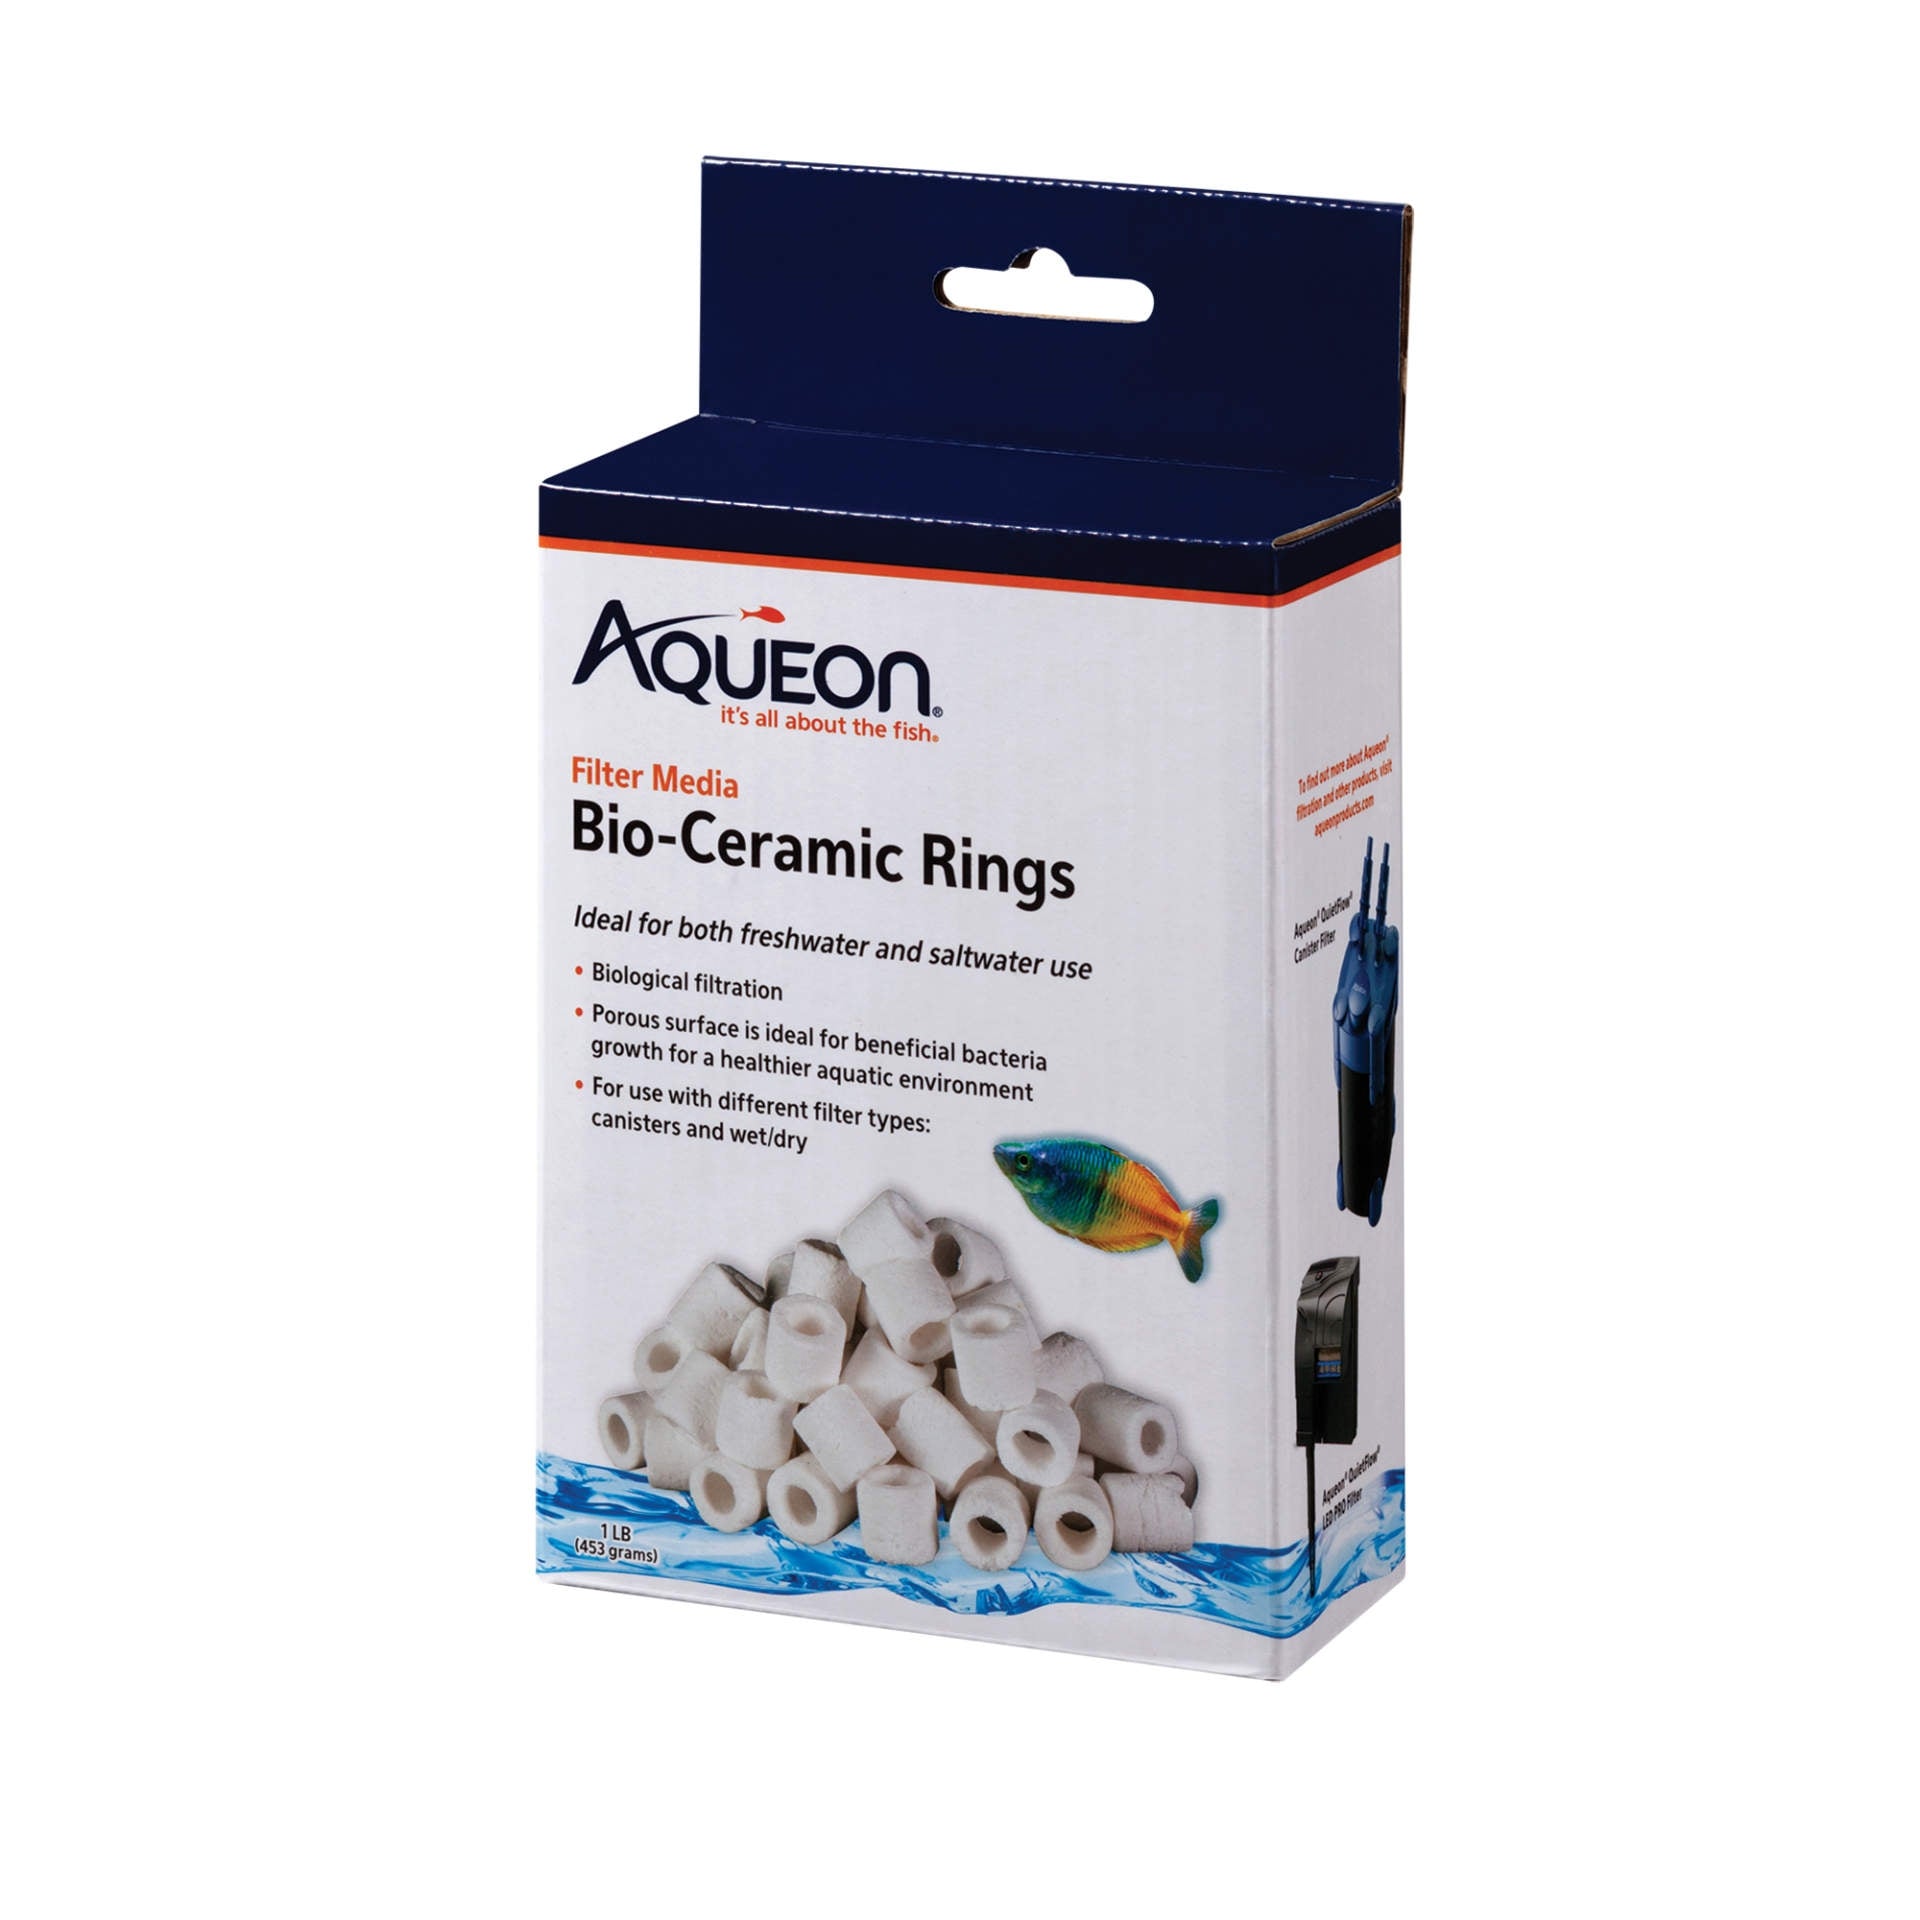 Aqueon Bio-Ceramic Ring Filter Media 1lb